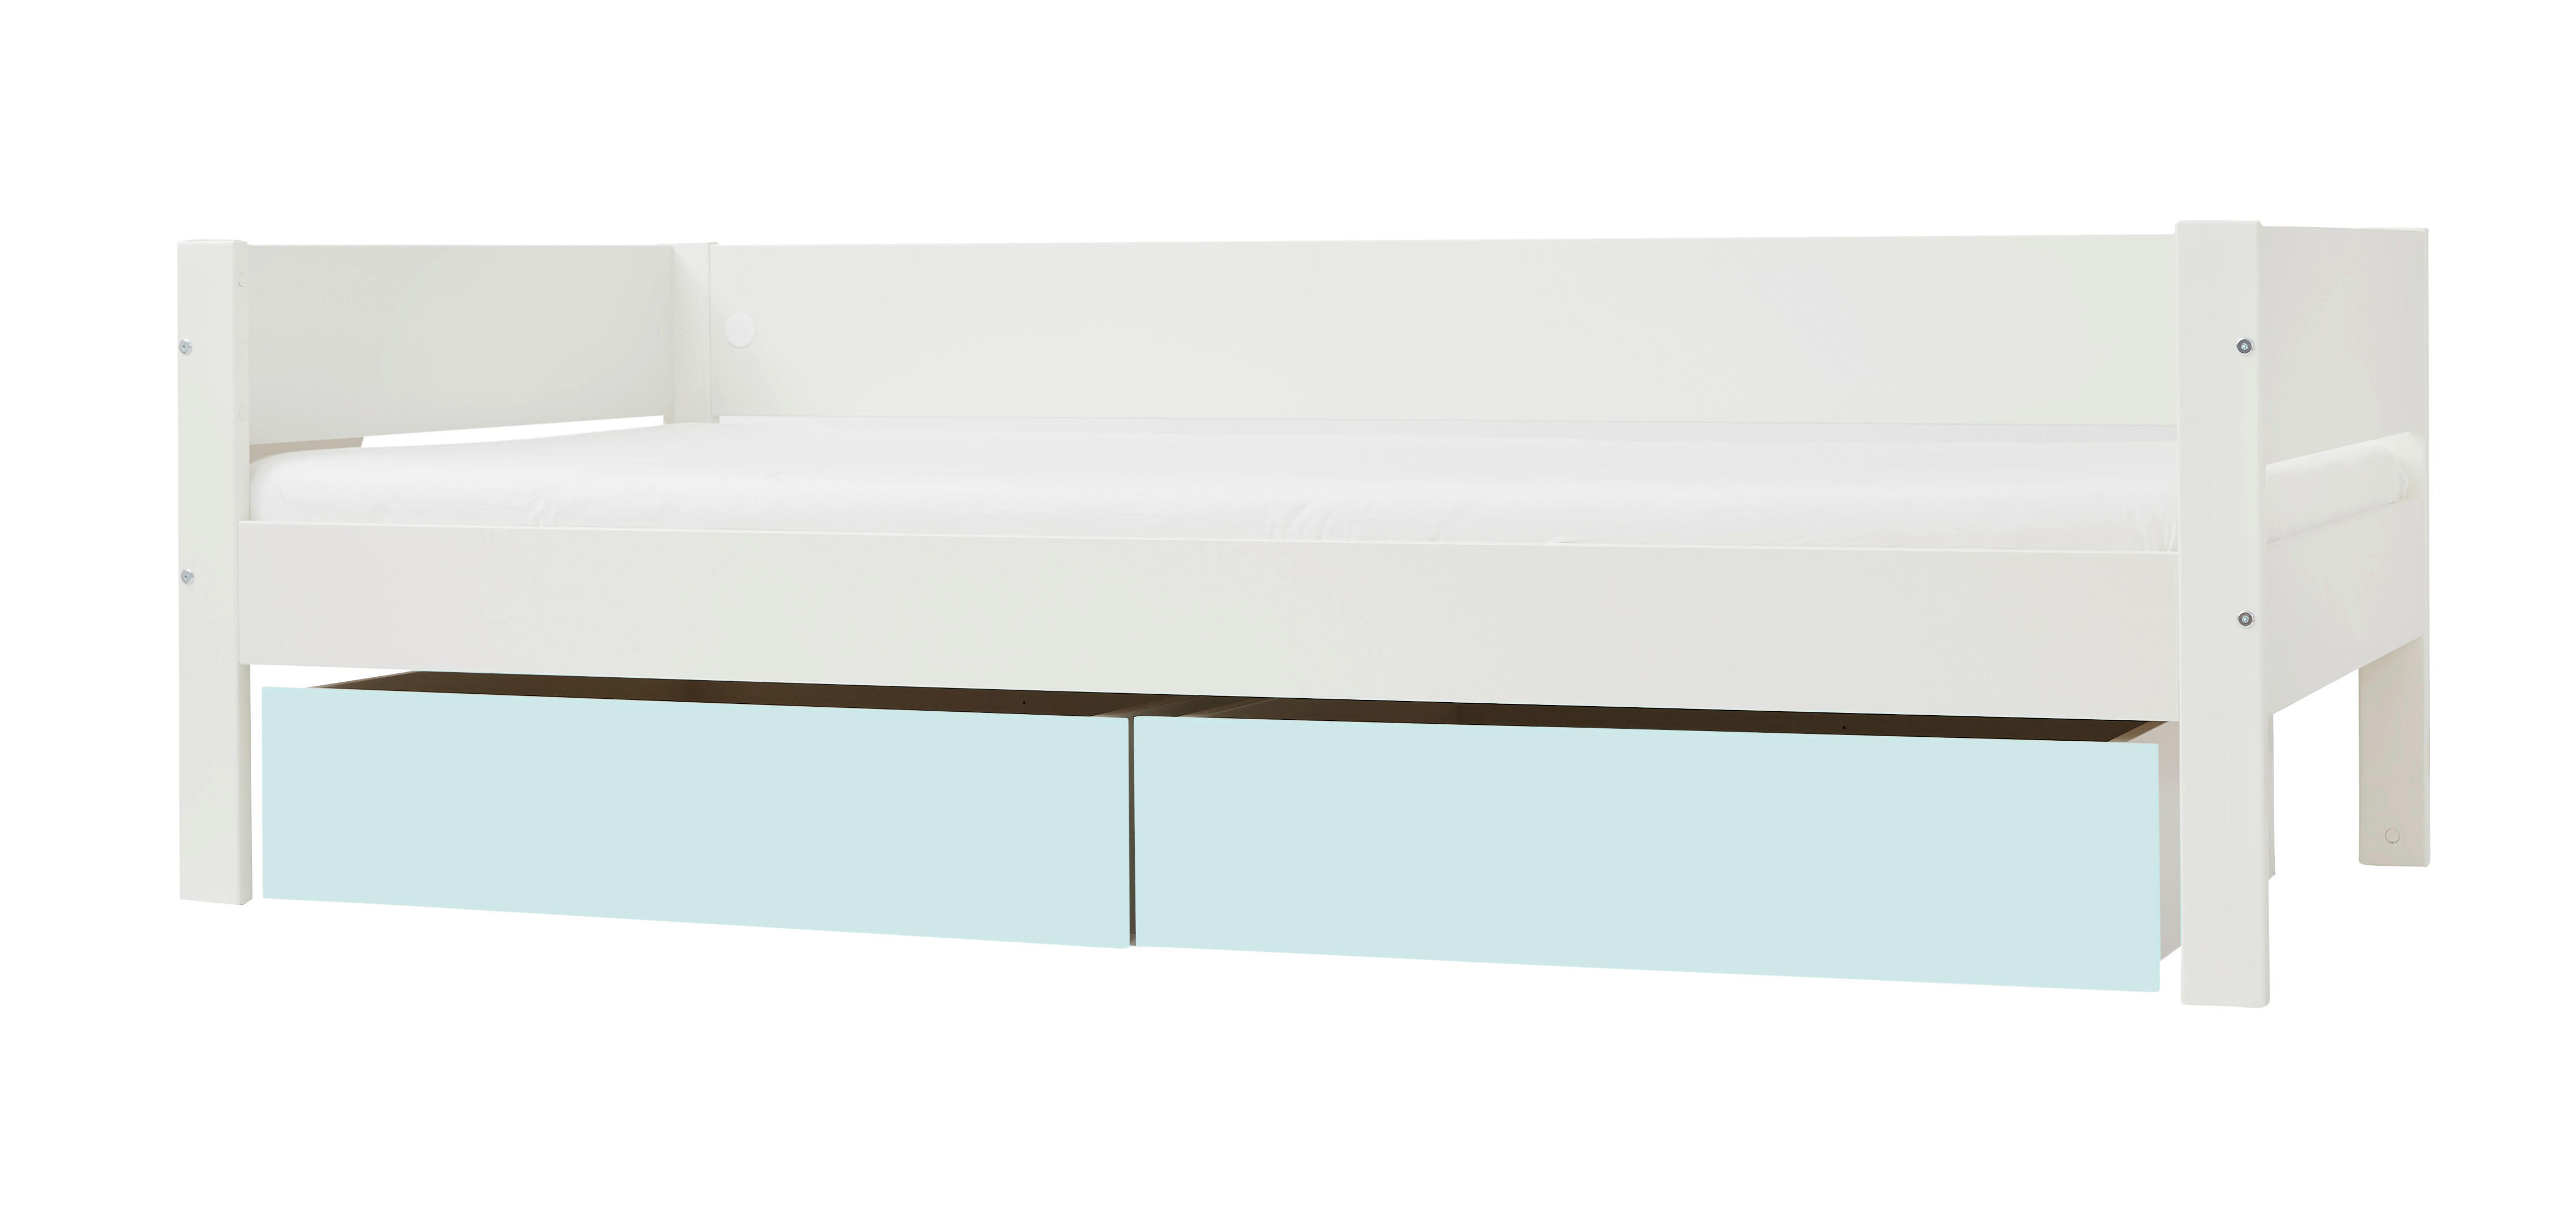 BETT 90/200 cm  in Weiß, Mintgrün  - Naturfarben/Weiß, Design, Holz/Holzwerkstoff (90/200cm) - Ben'n'jen